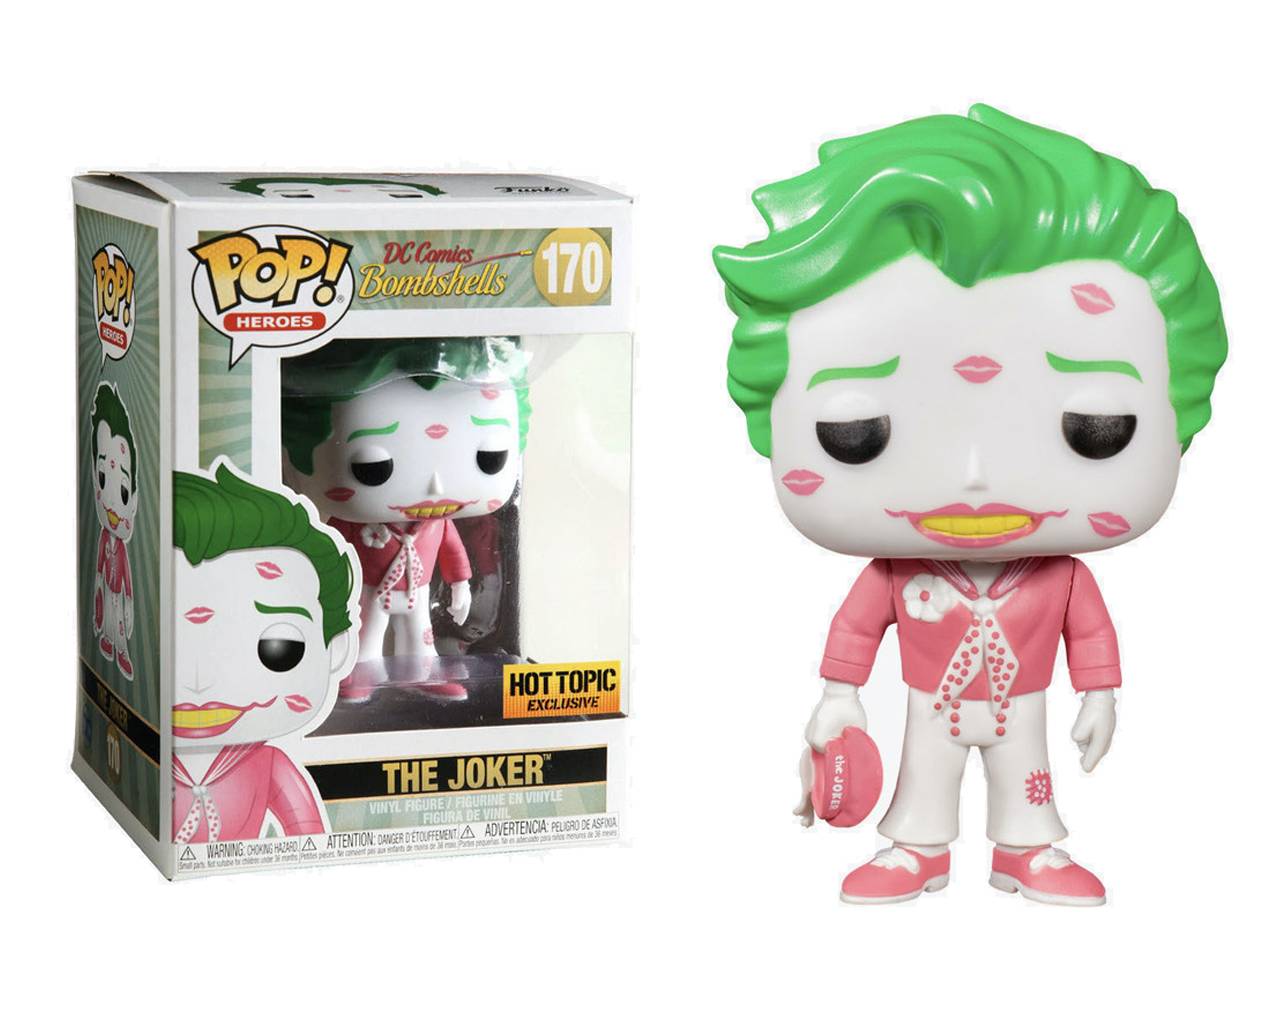 The Joker with Kisses (Pink) Pop! Vinyl